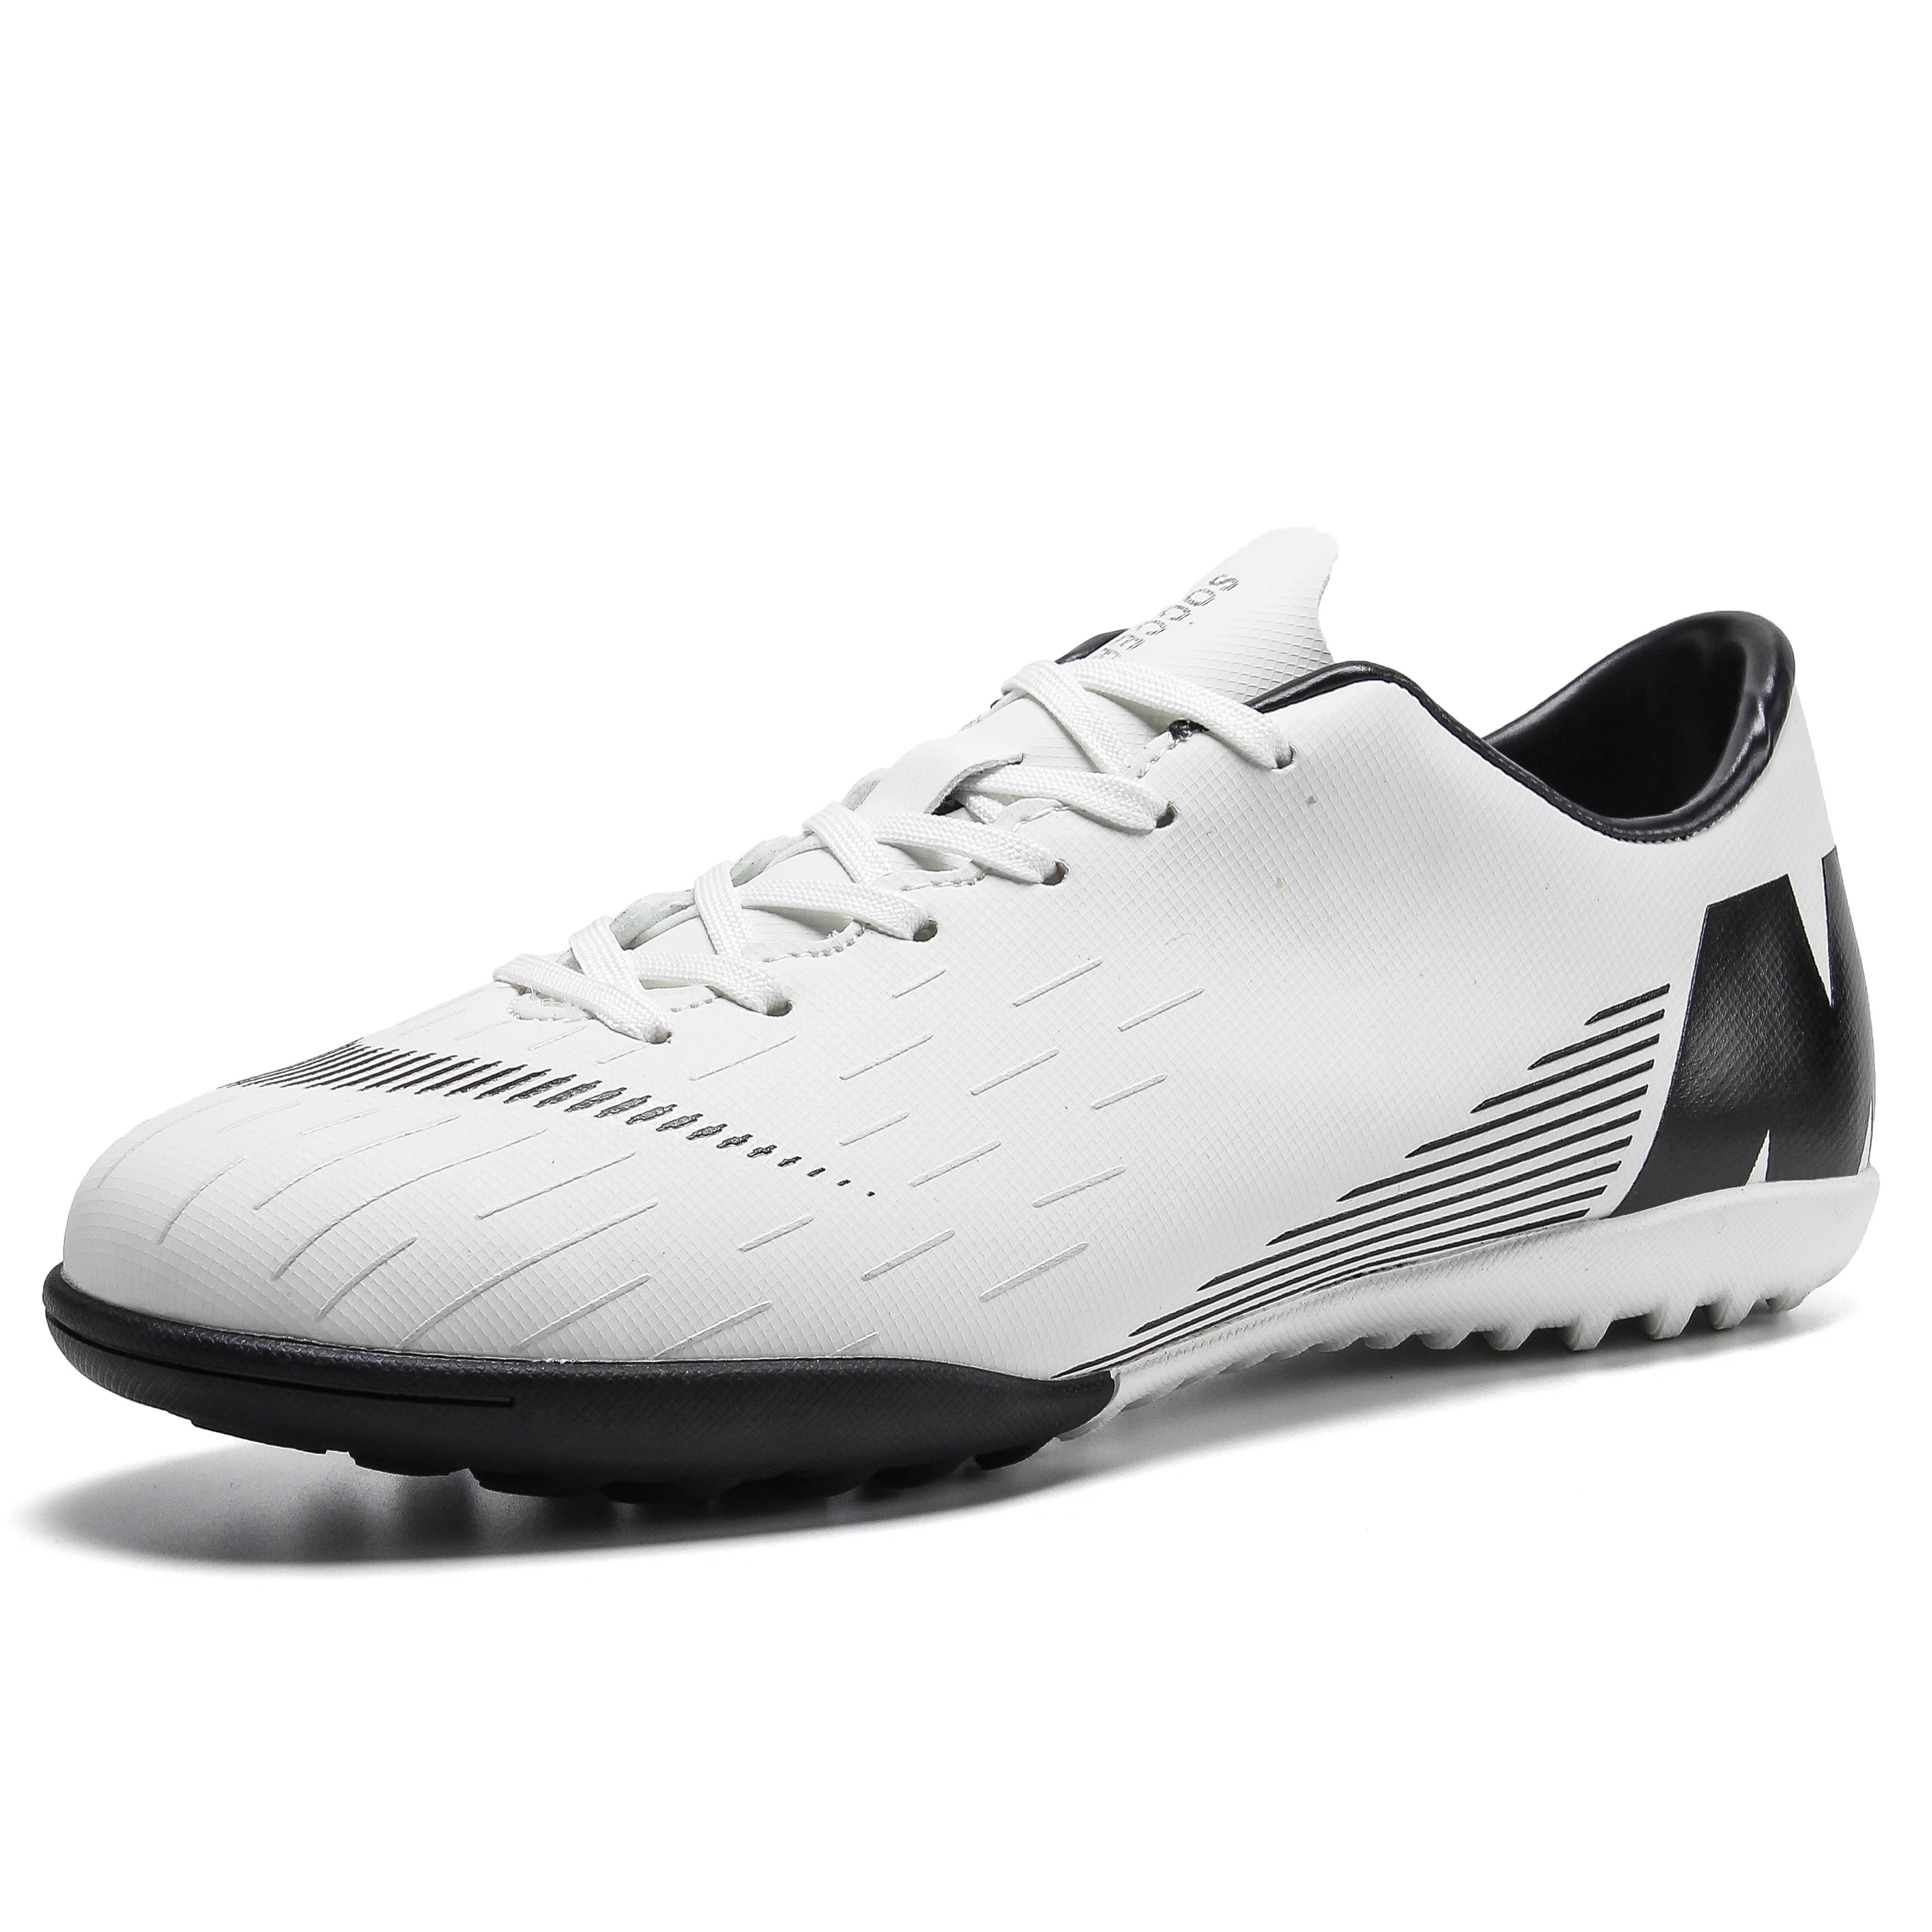 Футбольная обувь для мужчин; CR7 кроссовки; Женские бутсы; жесткая нескользящая обувь для тренировок; TF/AG; футбольные бутсы; спортивные кроссовки